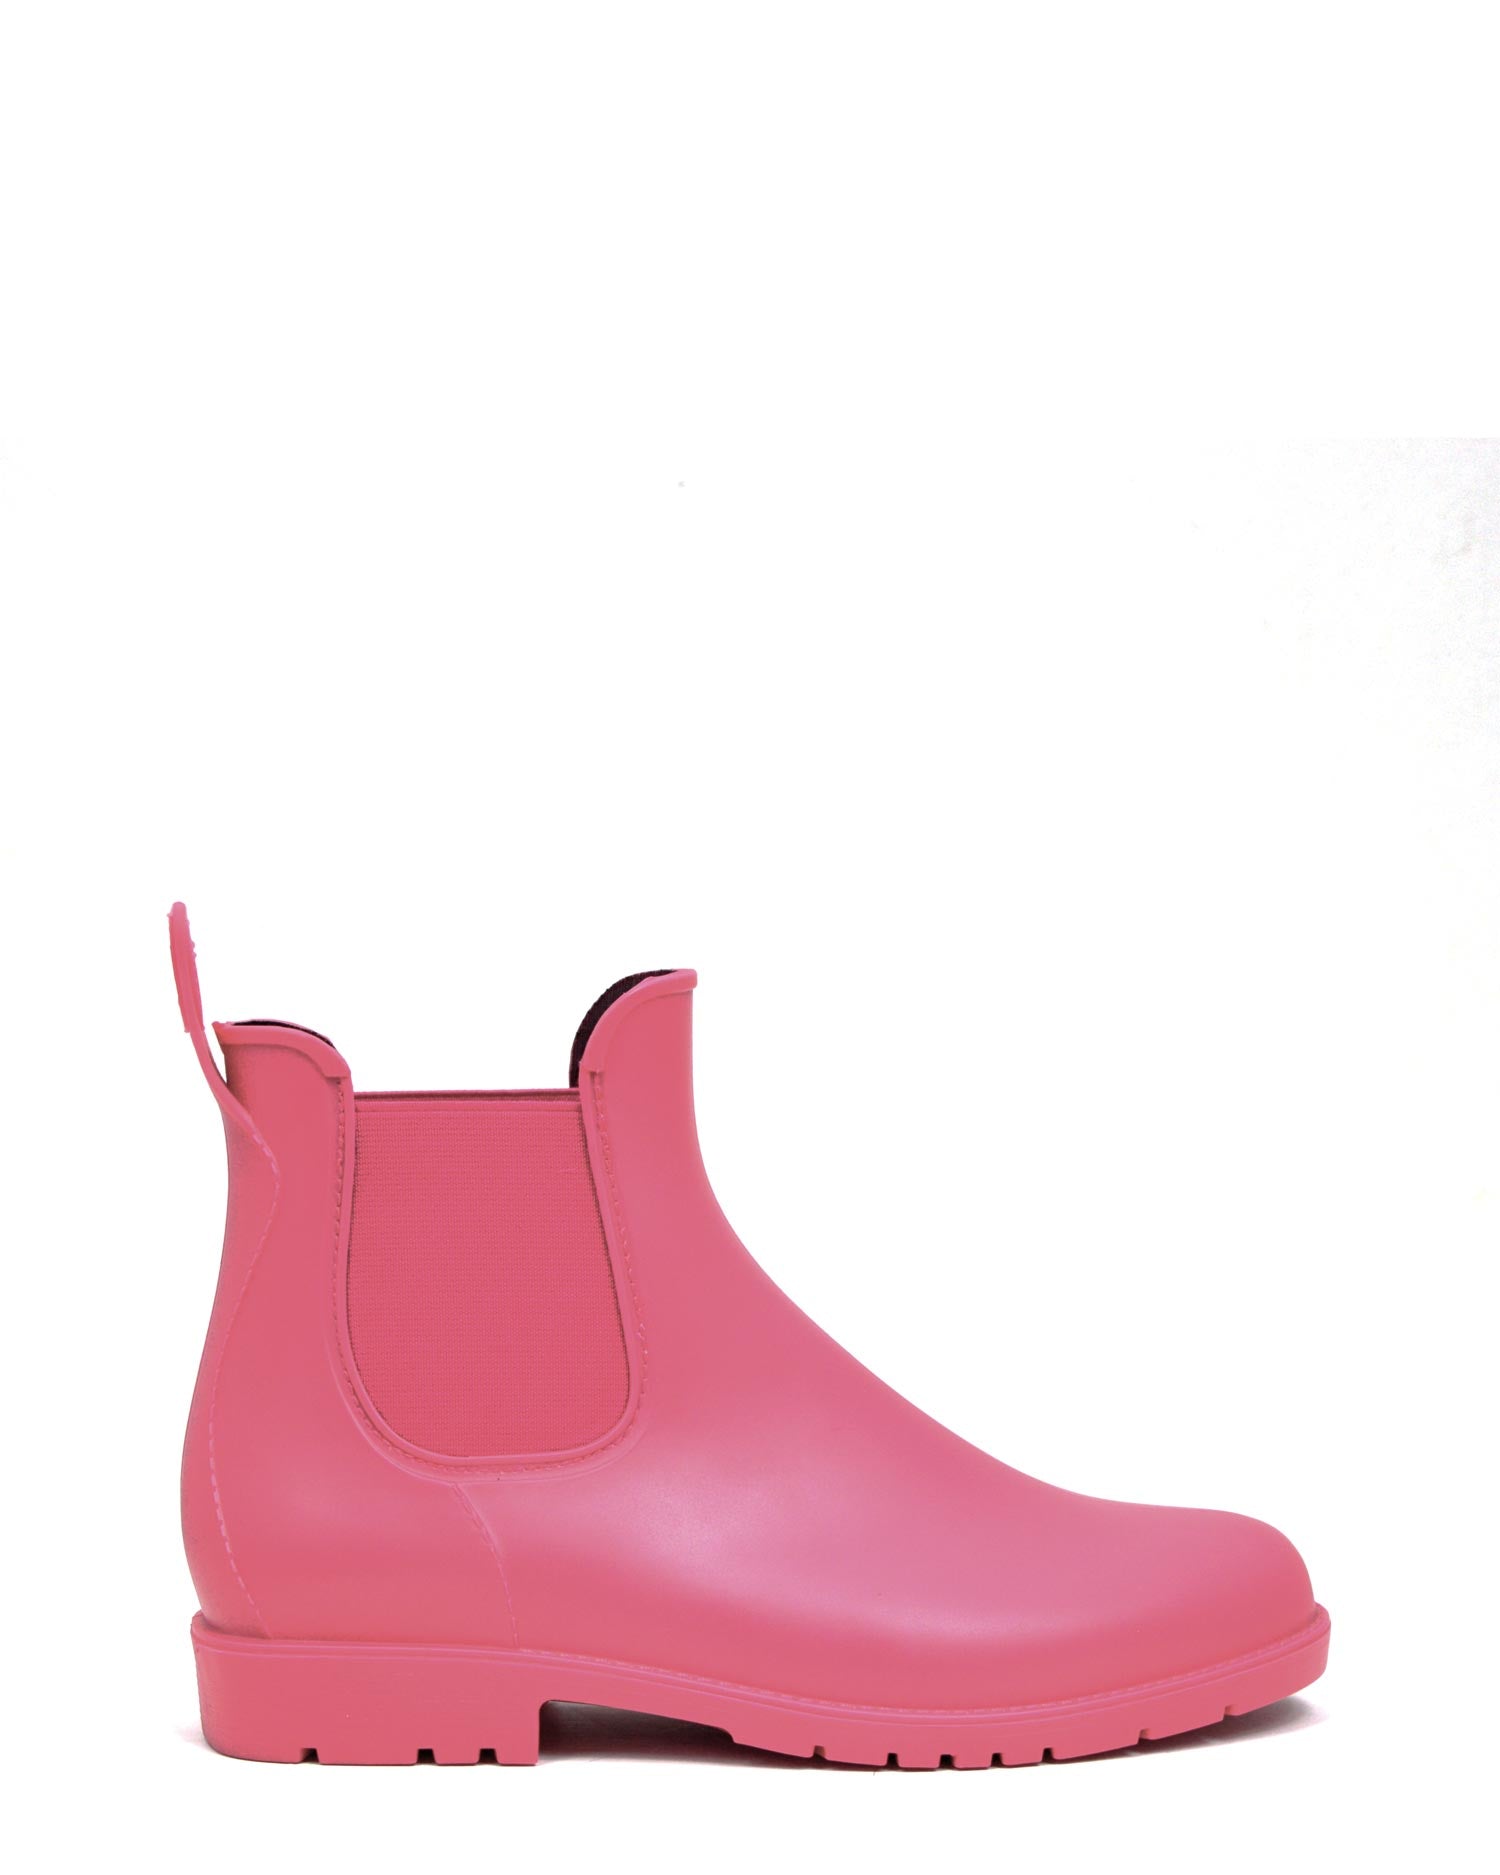 Chelsea Rose Ankle Rain Boots PVC